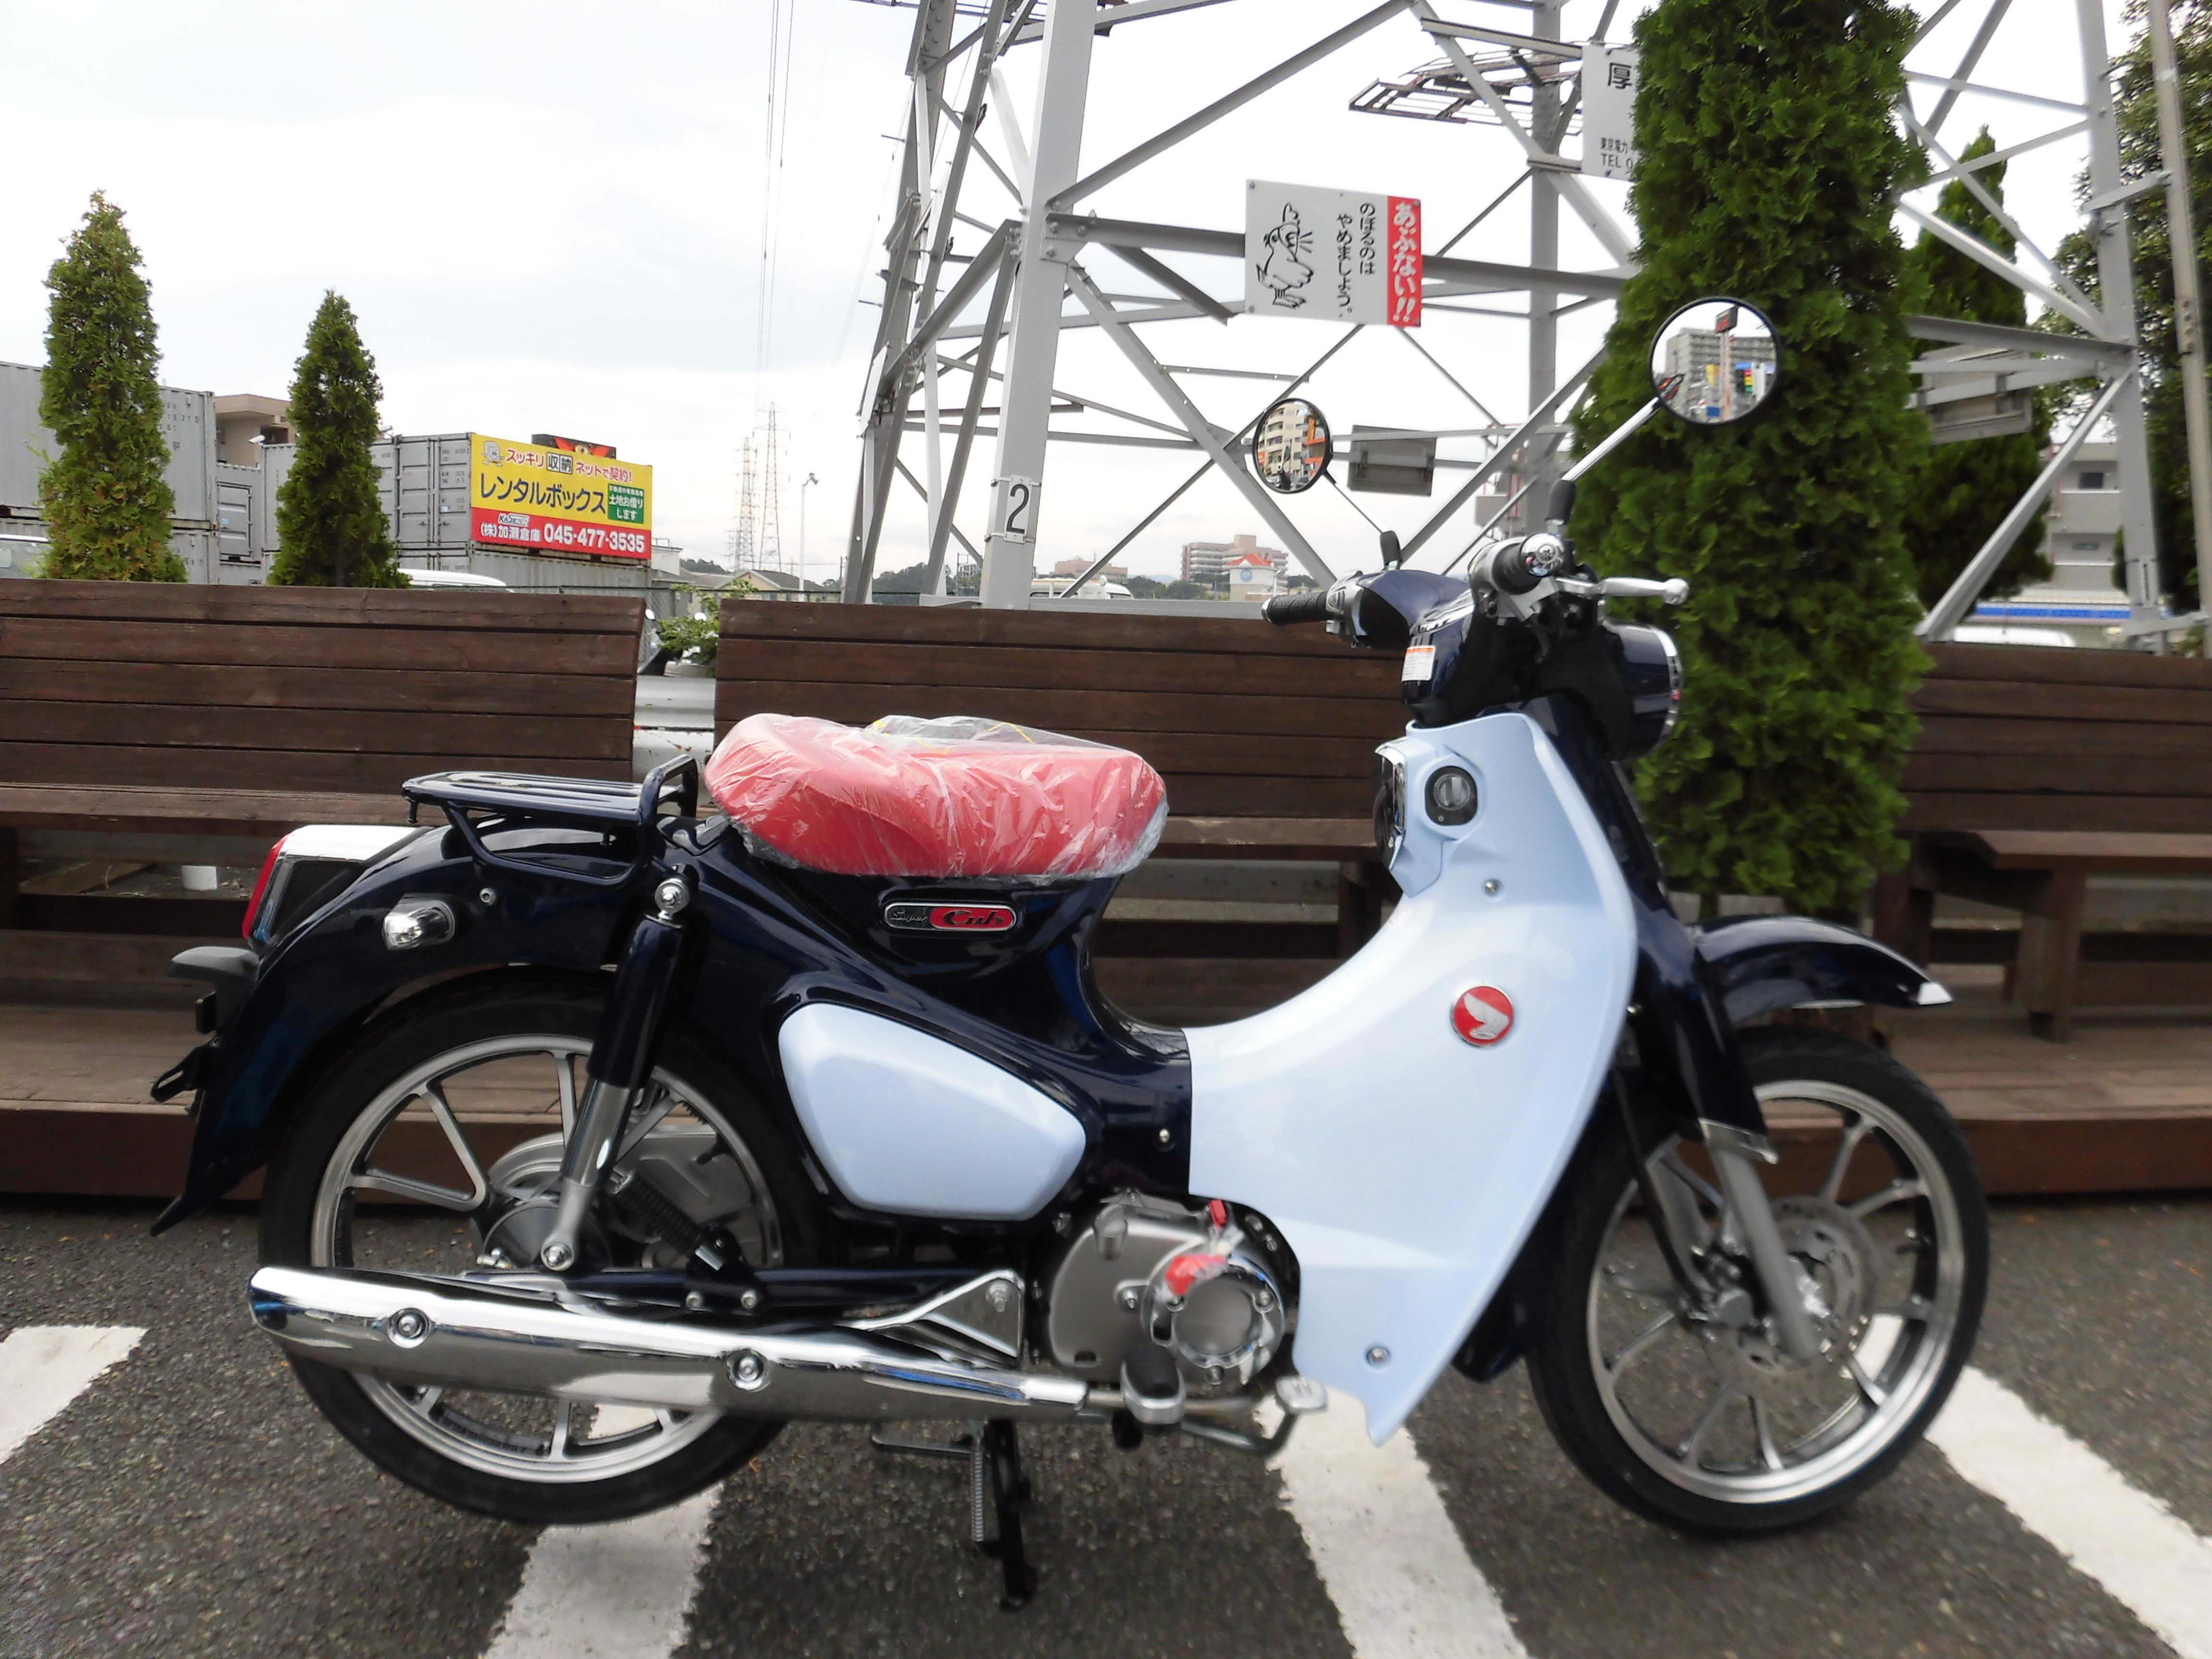 スーパーカブc125予約受付中です 最新情報 U Media ユーメディア 中古バイク 新車バイク探しの決定版 神奈川 東京でバイク探すならユーメディア